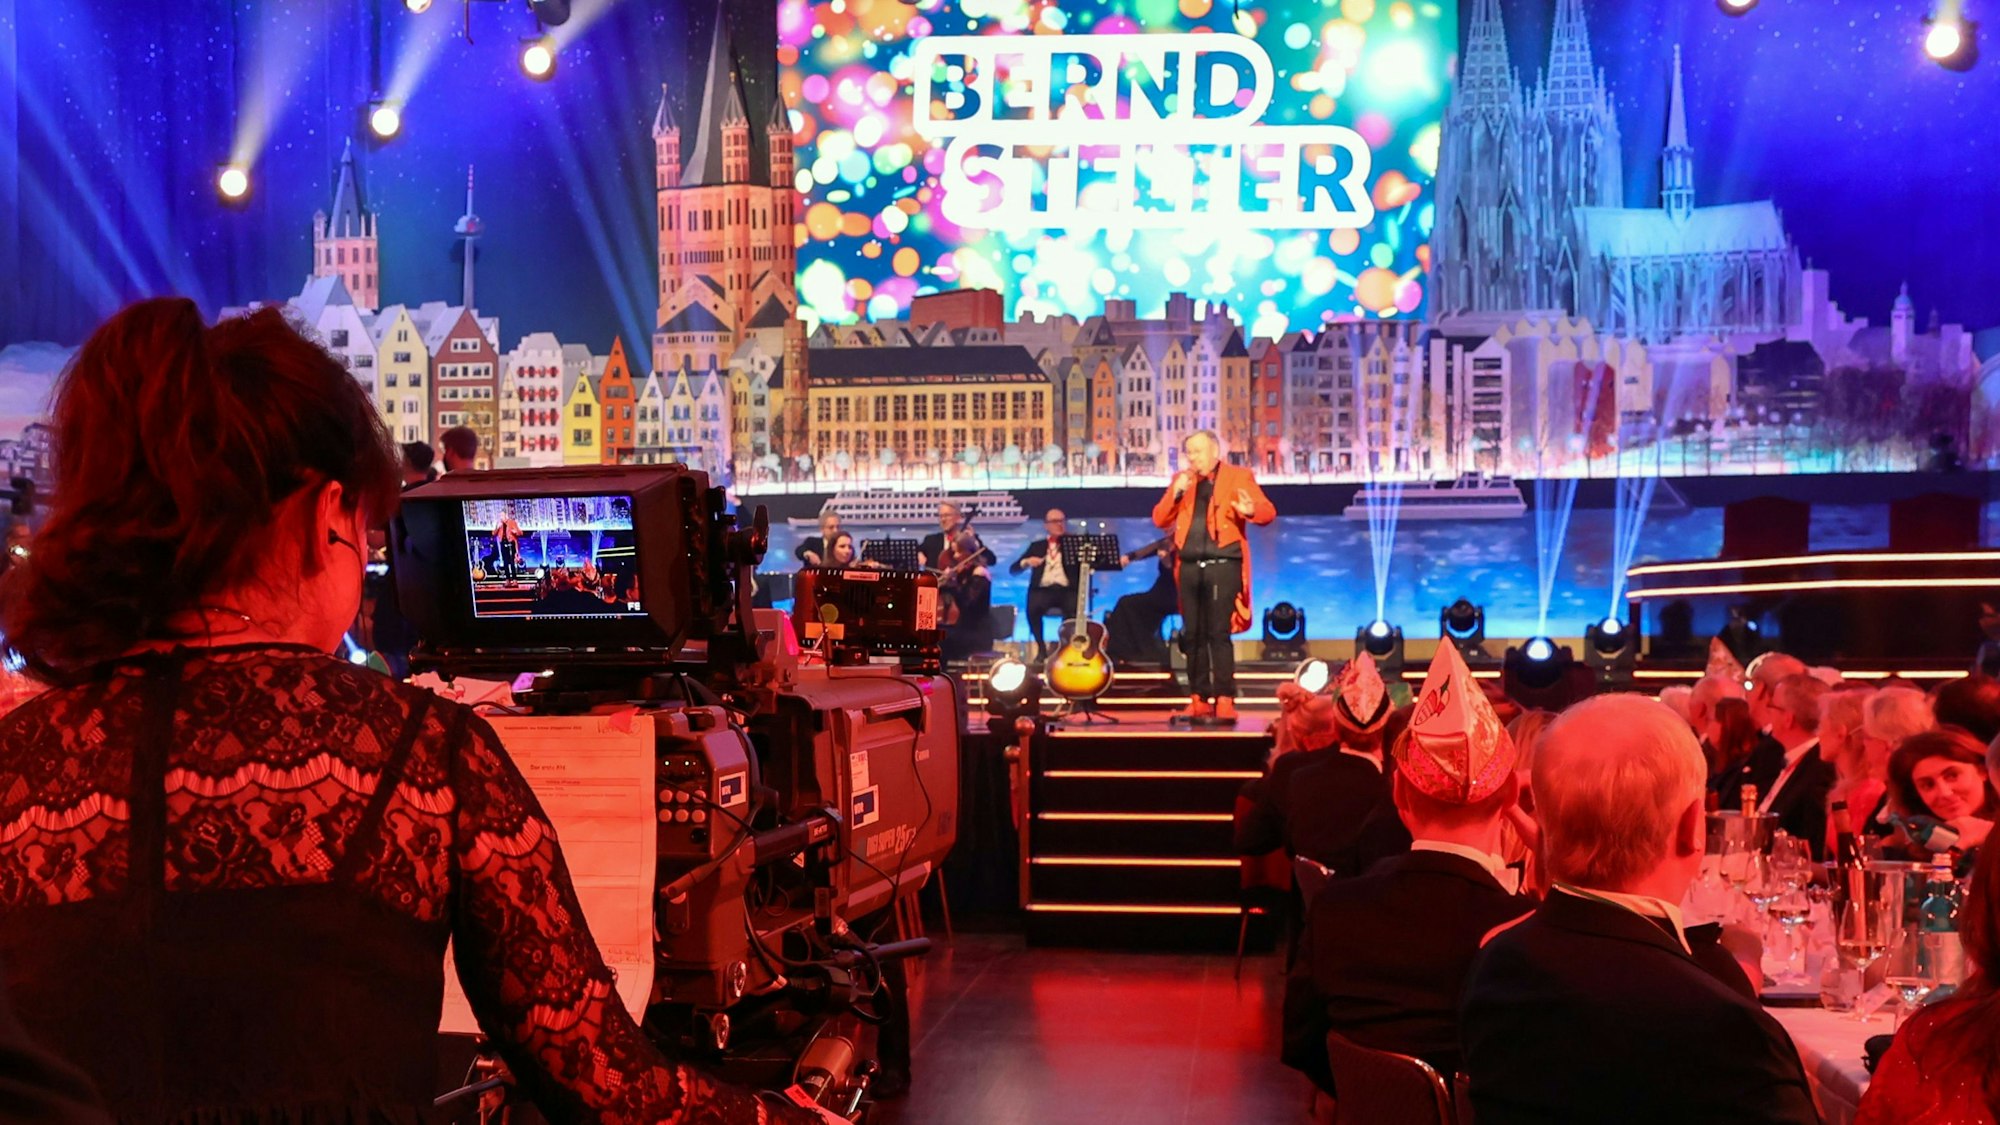 Eine Kamerafrau filmt aus der Saalmitte in Richtung Bühne, auf der Bernd Stelter steht.